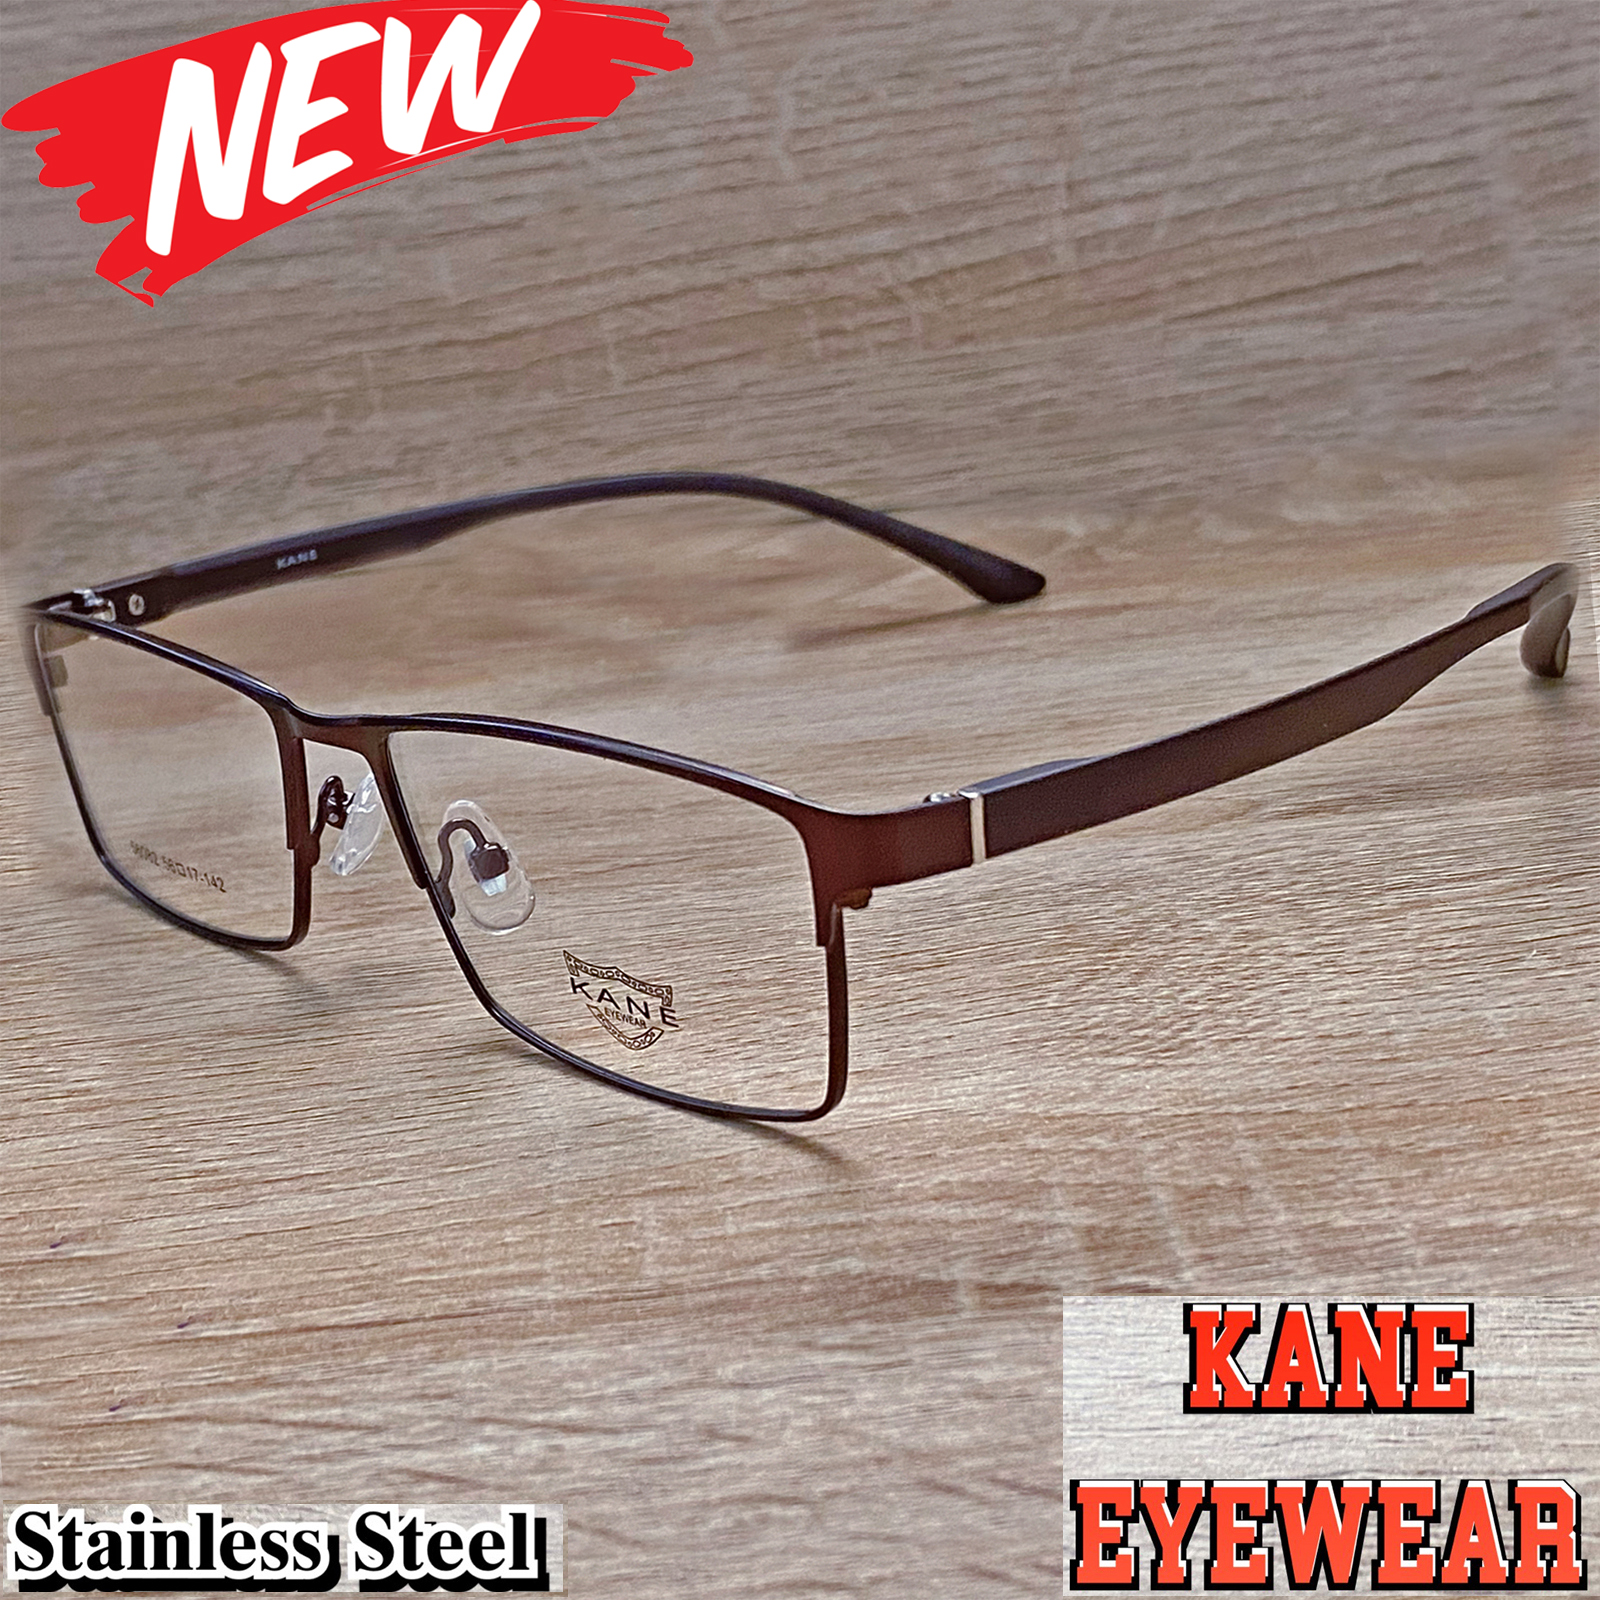 แว่นตาสำหรับตัดเลนส์ กรอบแว่นตา แว่นตา ชาย-หญิง Fashion รุ่น KANE 56082 กรอบเต็ม ทรงเหลี่ยม ขาข้อต่อ Stainless Steel